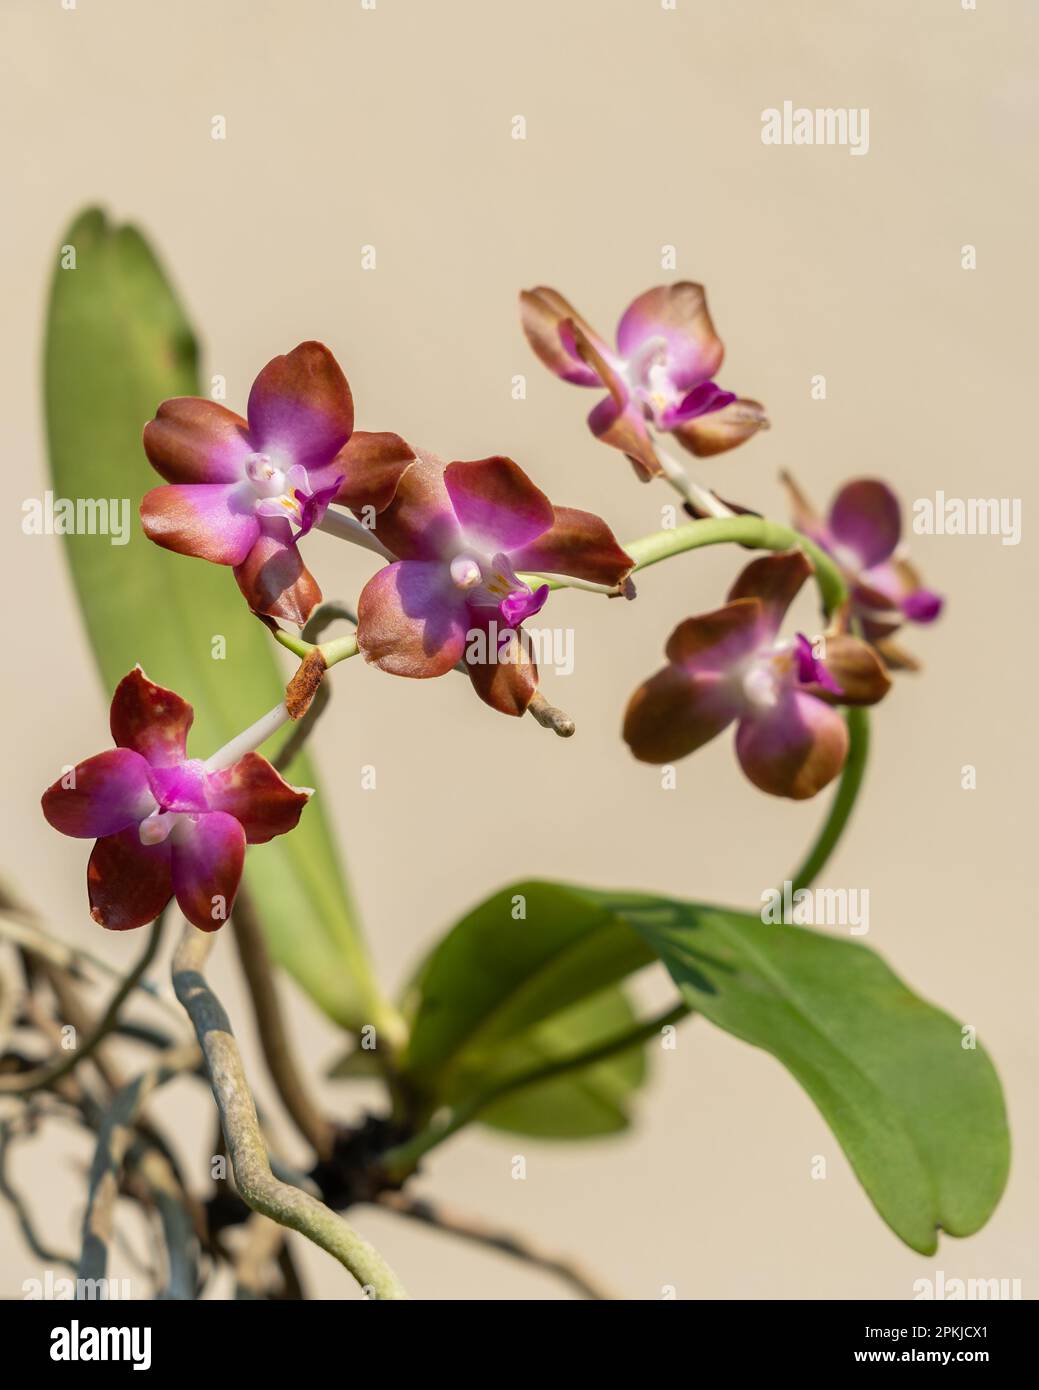 Vue rapprochée de l'espèce d'orchidée tropicale épiphytique colorée hygrochilus parishii var numottiana qui fleurit avec des fleurs violettes, blanches et brunes Banque D'Images